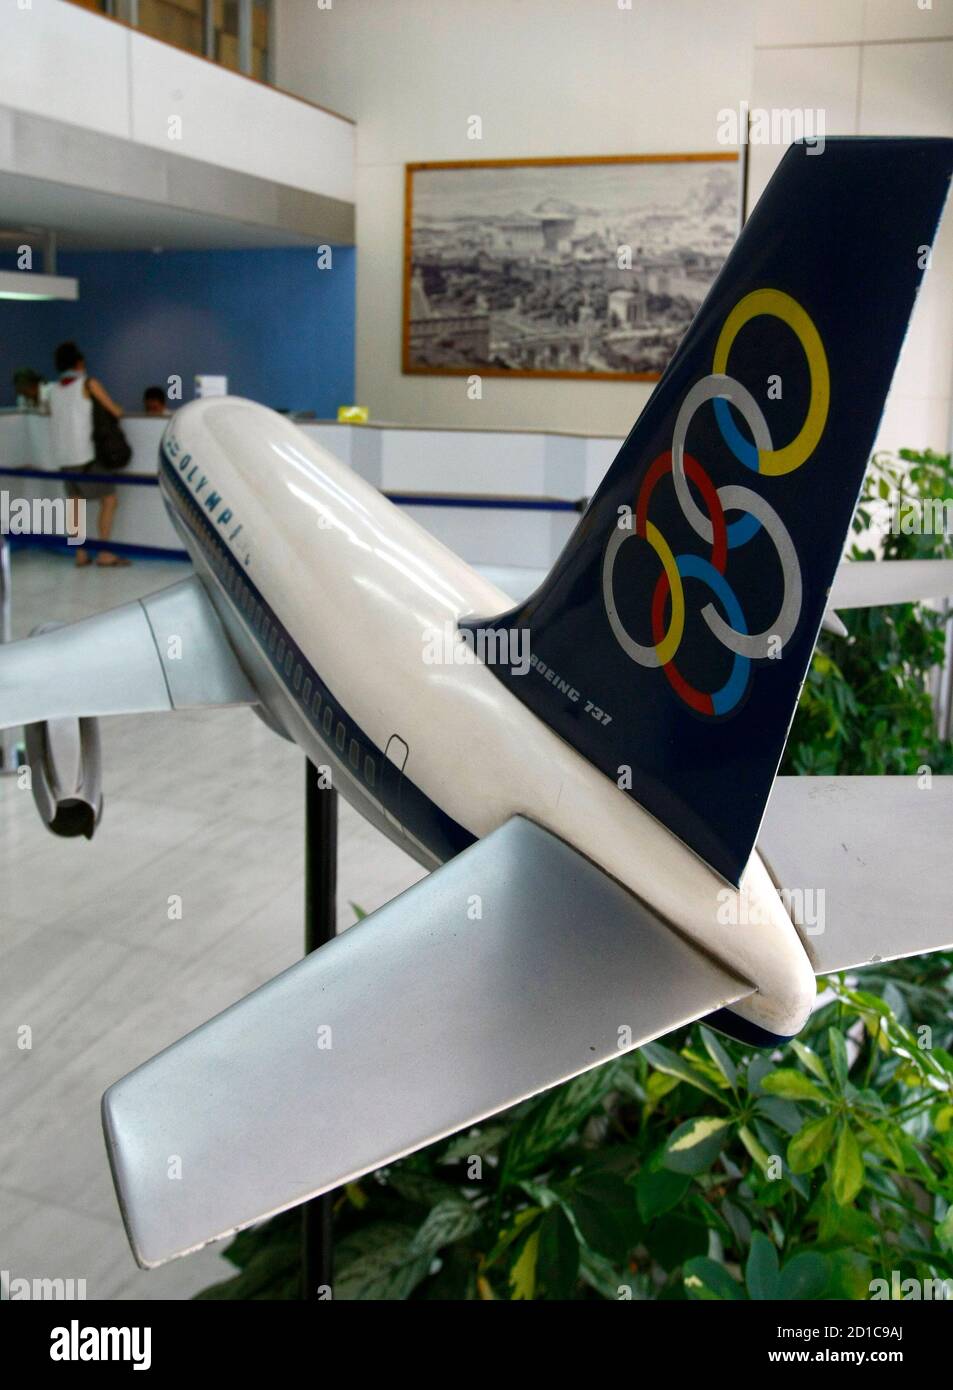 Olympic Airlines Stockfotos und -bilder Kaufen - Alamy